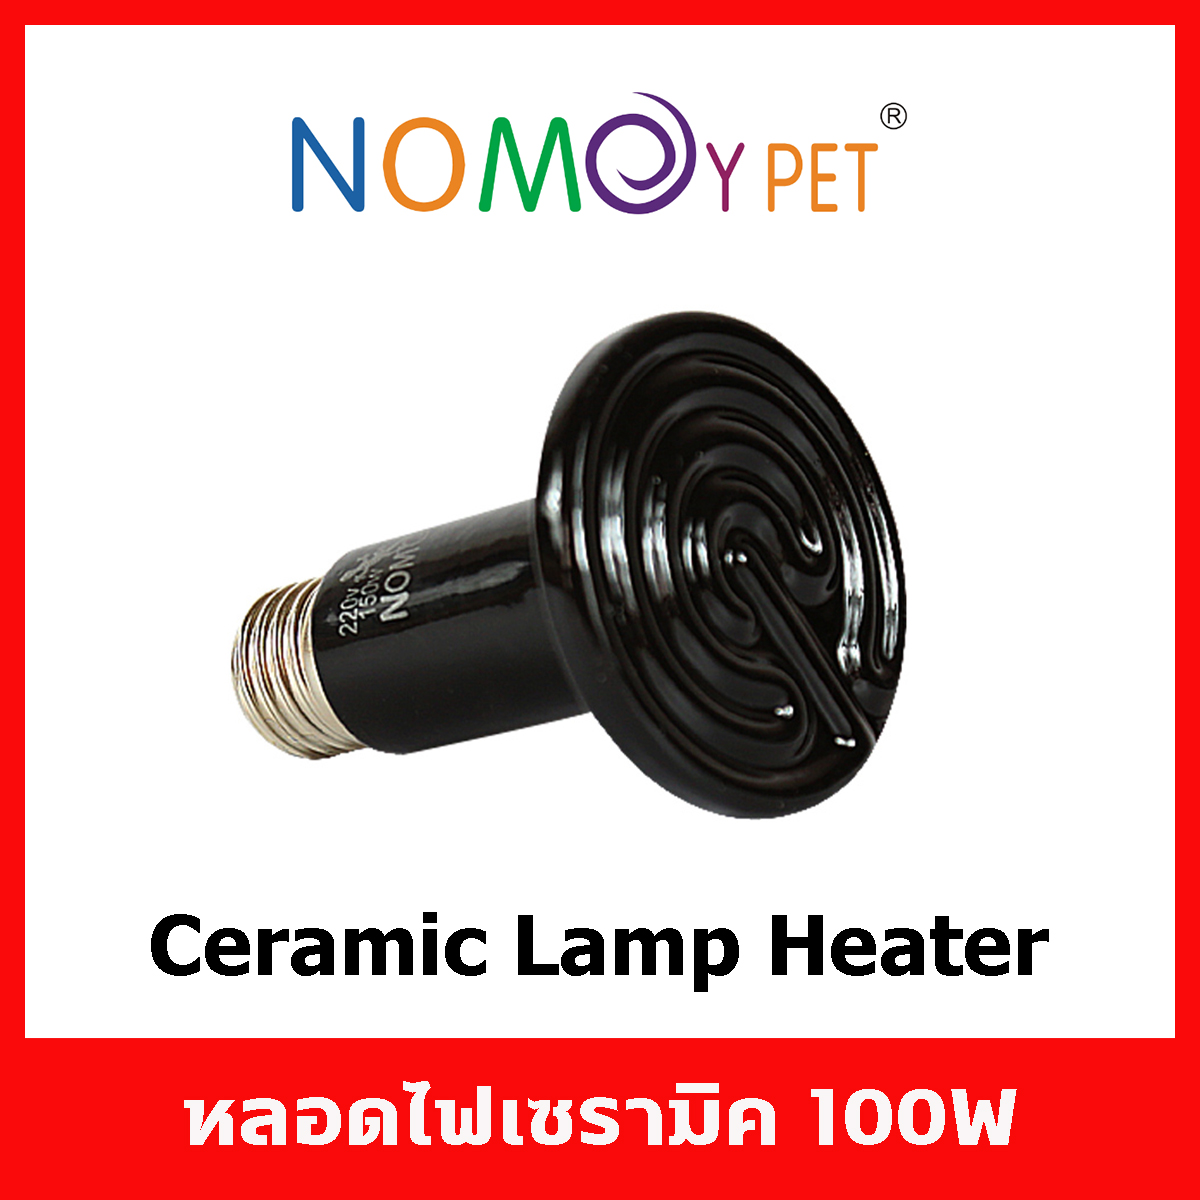 หลอดไฟ เซรามิค ให้ความร้อนความอบอุ่นสำหรับสัตว์เลี้ยงทุกชนิด Nomoy Pet Ceramic Lamp Heater สีดำ 100W